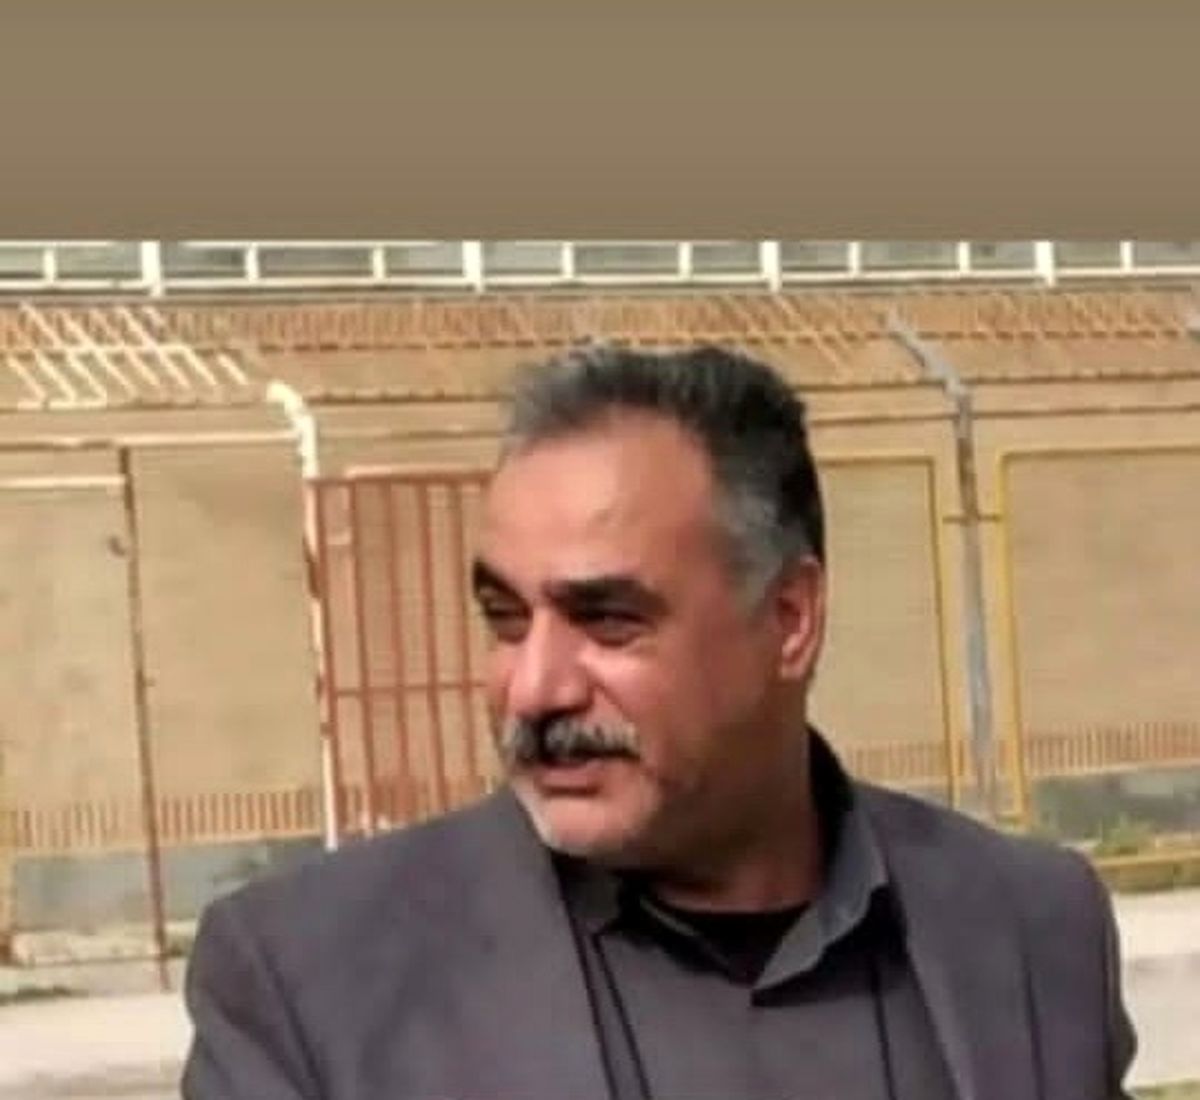 جان باختن رئیس شورای شهر بندر امام در سانحه رانندگی